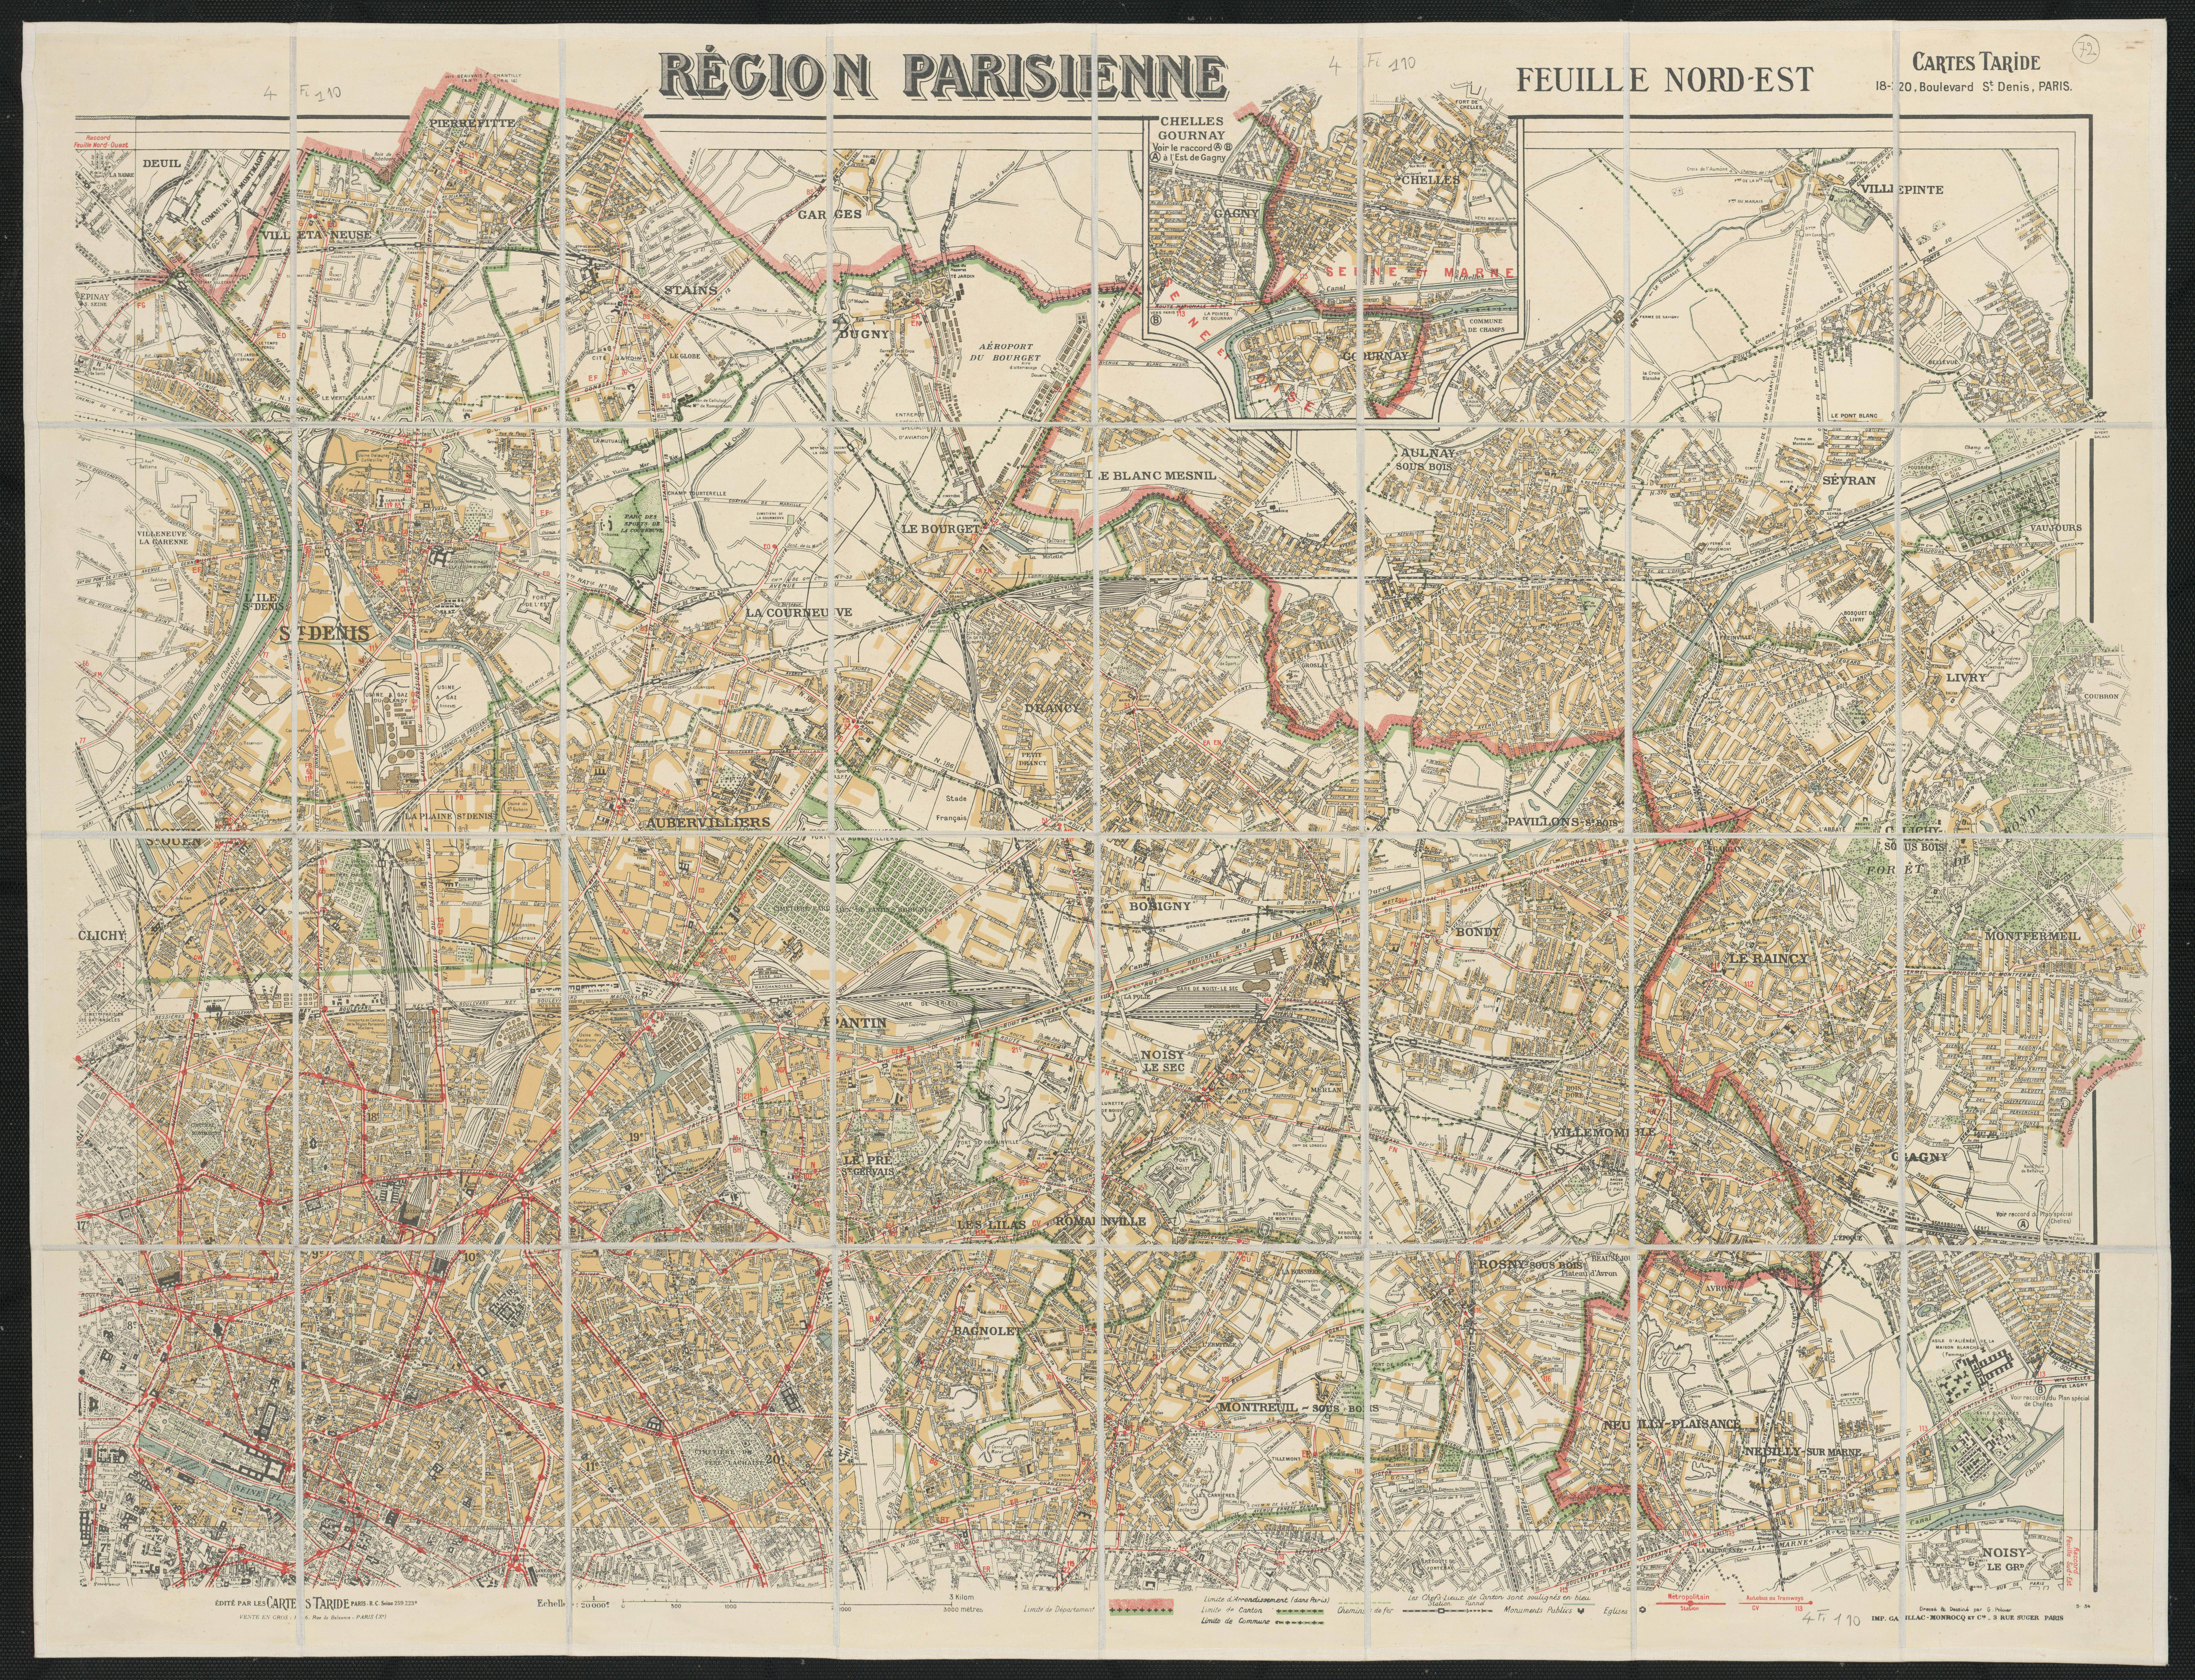 Région parisienne : feuille nord-est. 1934.